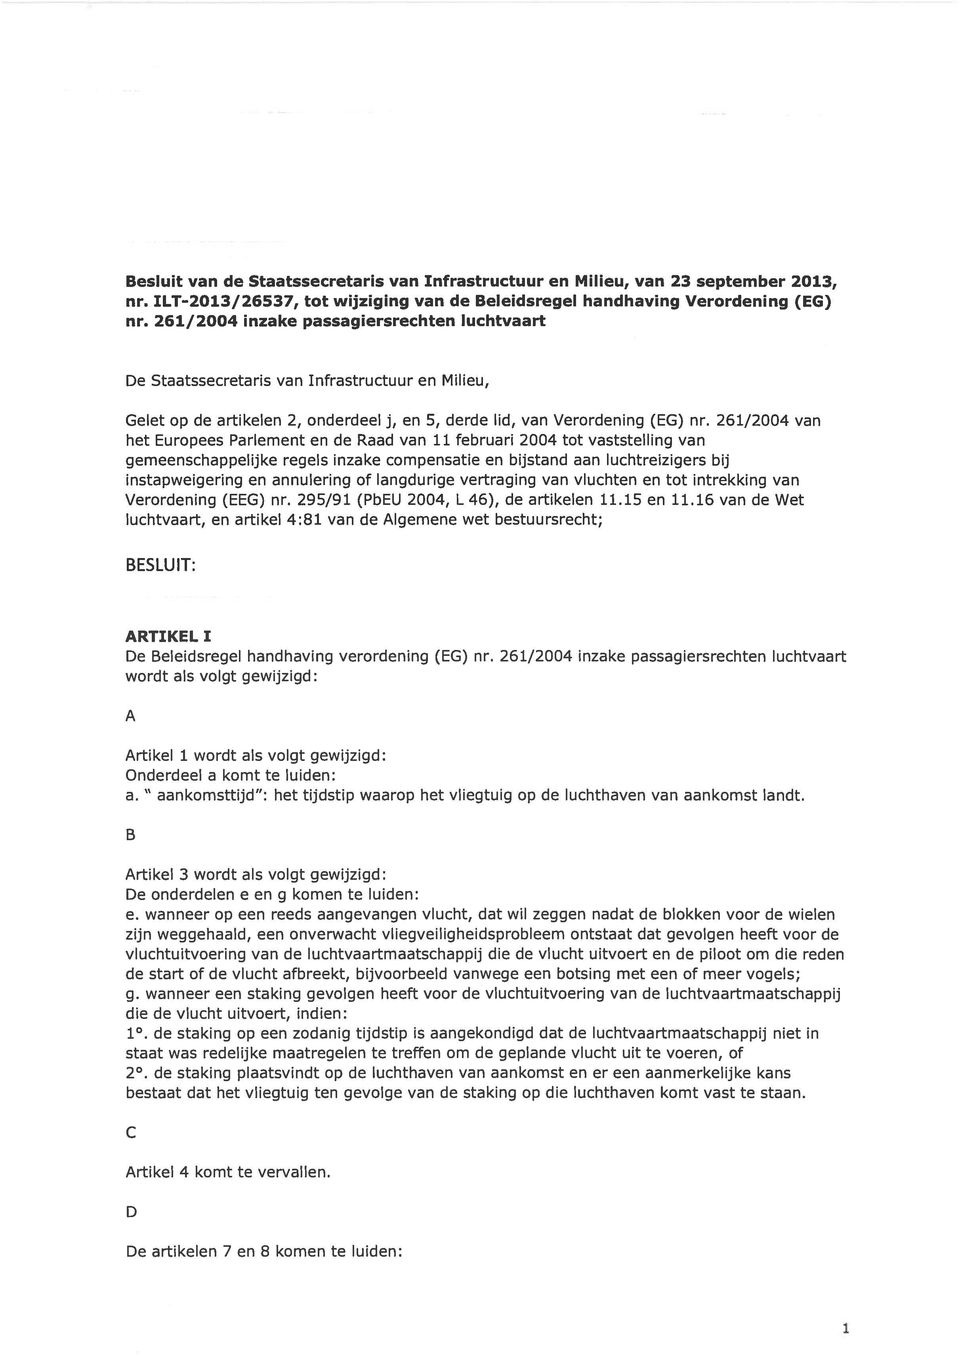 261/2004 van het Europees Parlement en de Raad van 11 februari 2004 tot vaststelling van gemeenschappelijke regels inzake compensatie en bijstand aan luchtreizigers bij instapweigering en annulering